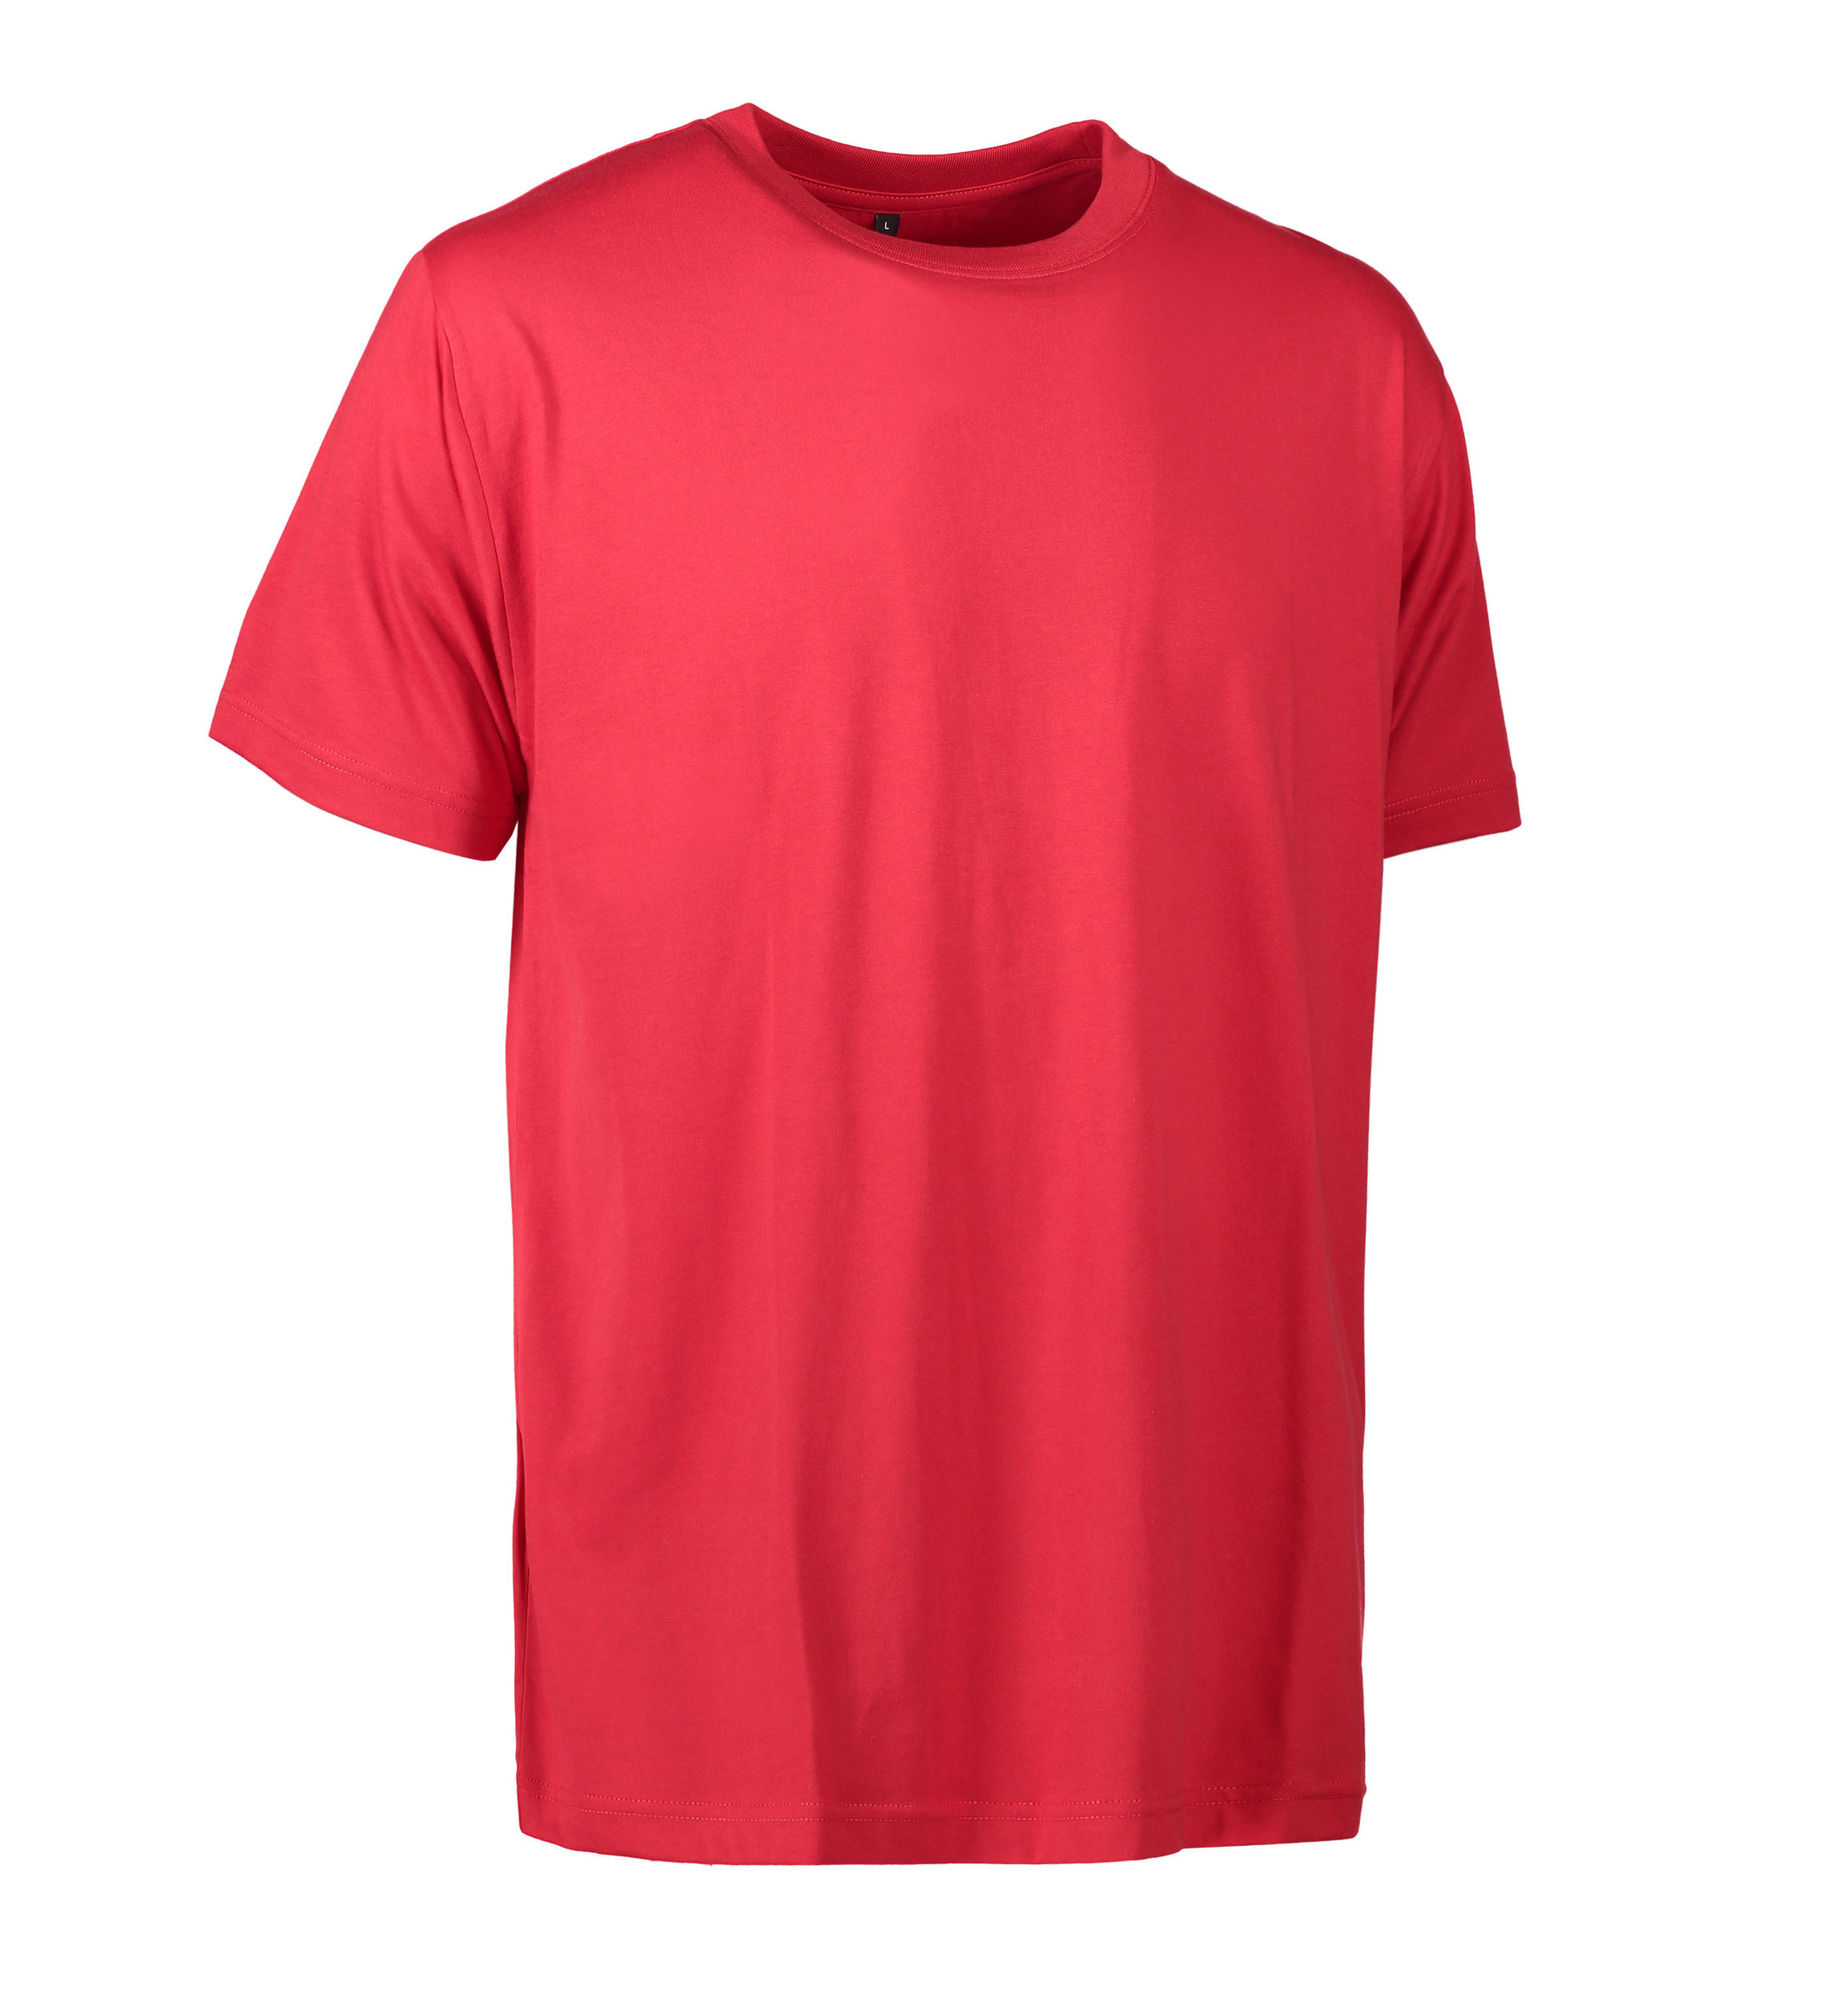 Se Slidstærk t-shirt i rød til mænd - XL hos Sygeplejebutikken.dk